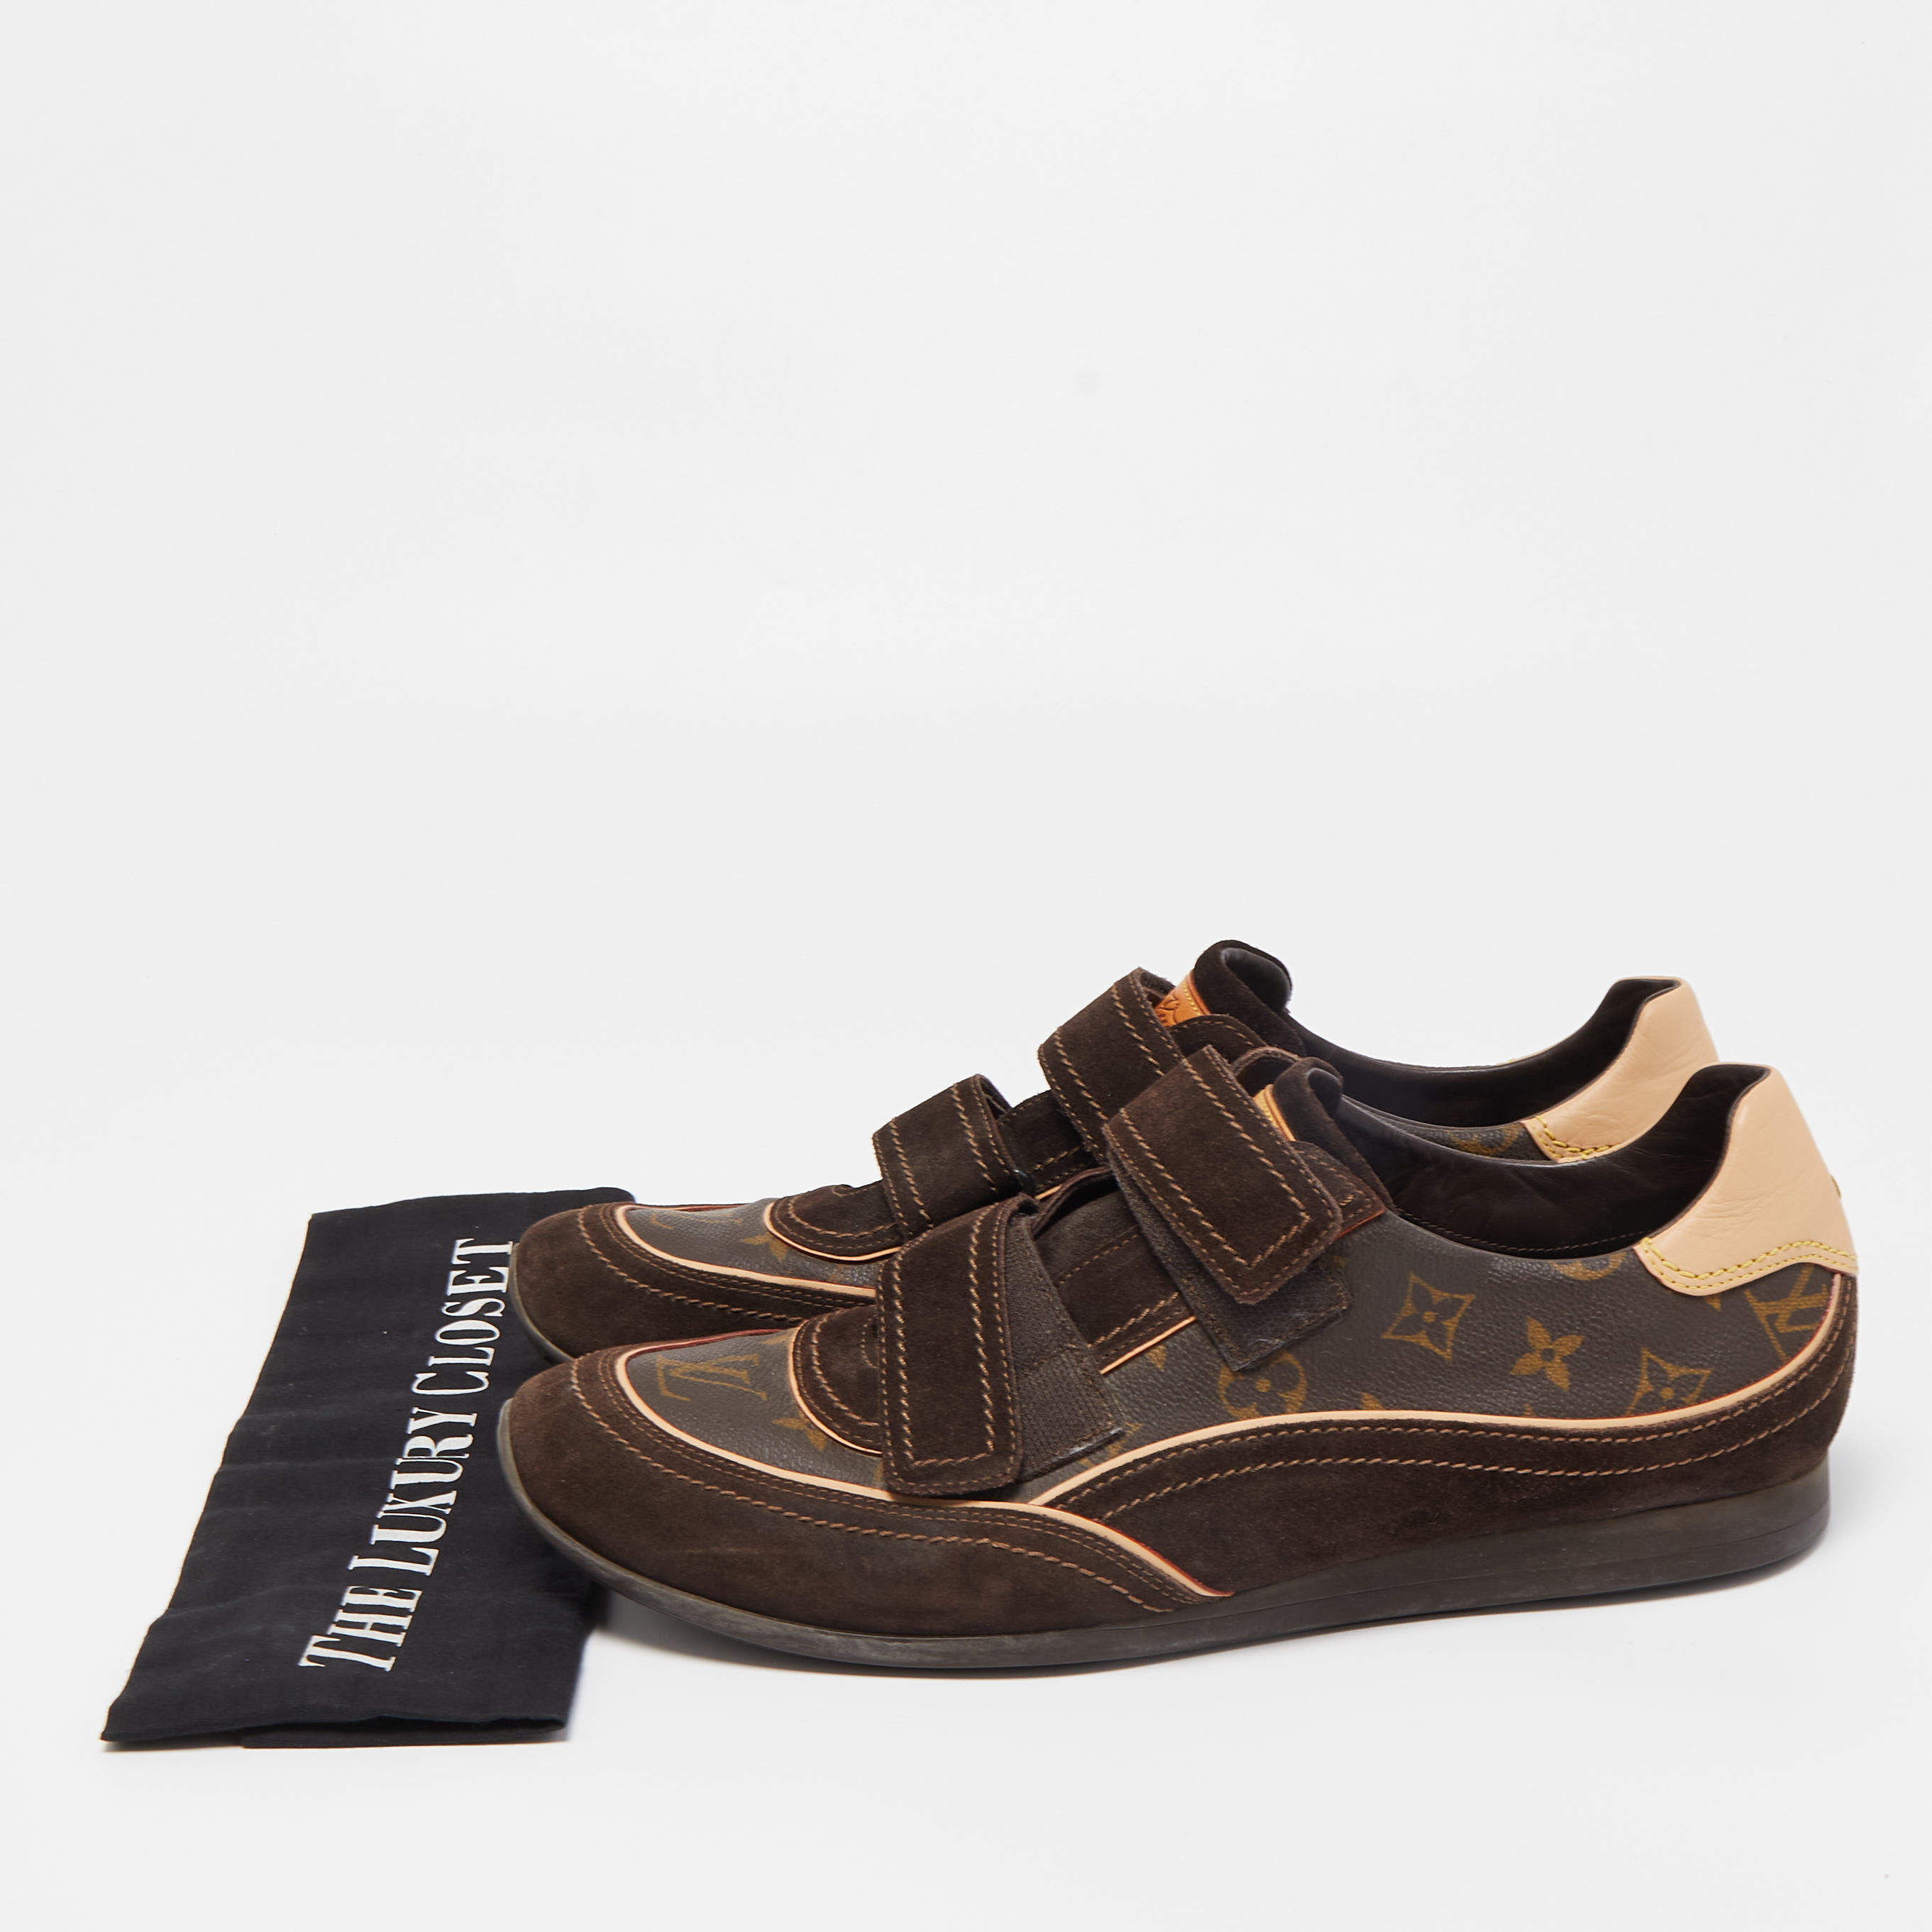 Louis Vuitton, Shoes, Kids Louis Vuitton Sneakers Black